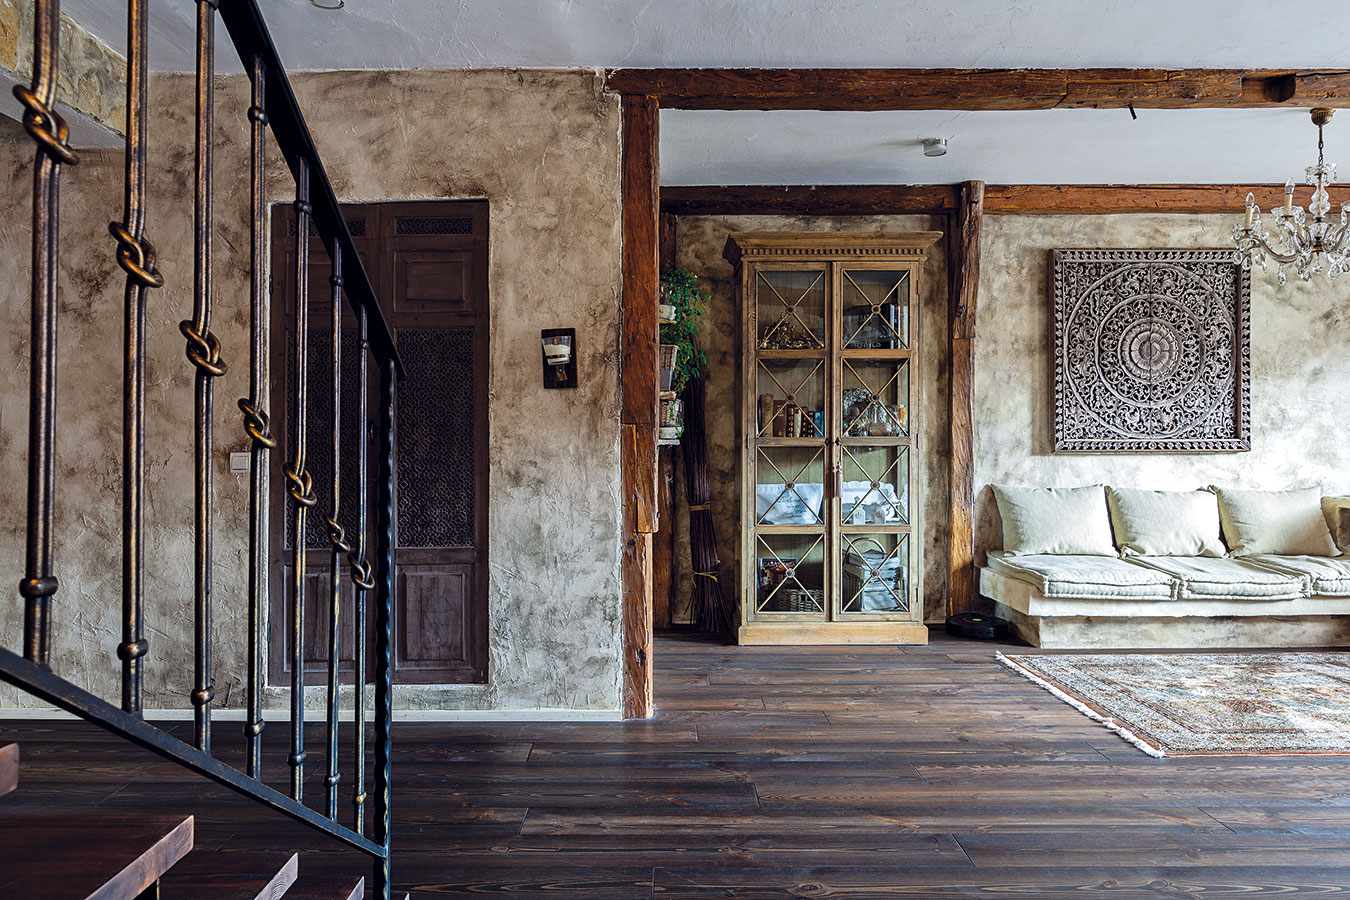 Zemitá barevnost podtržená netradiční povrchovou úpravou stěn dodává prostoru specifický charakter. Stoleté dřevěné hrazení v otevřené denní části pochází z domu po majitelčiných prarodičích. Proti schodišti se nachází prostorná šatna.